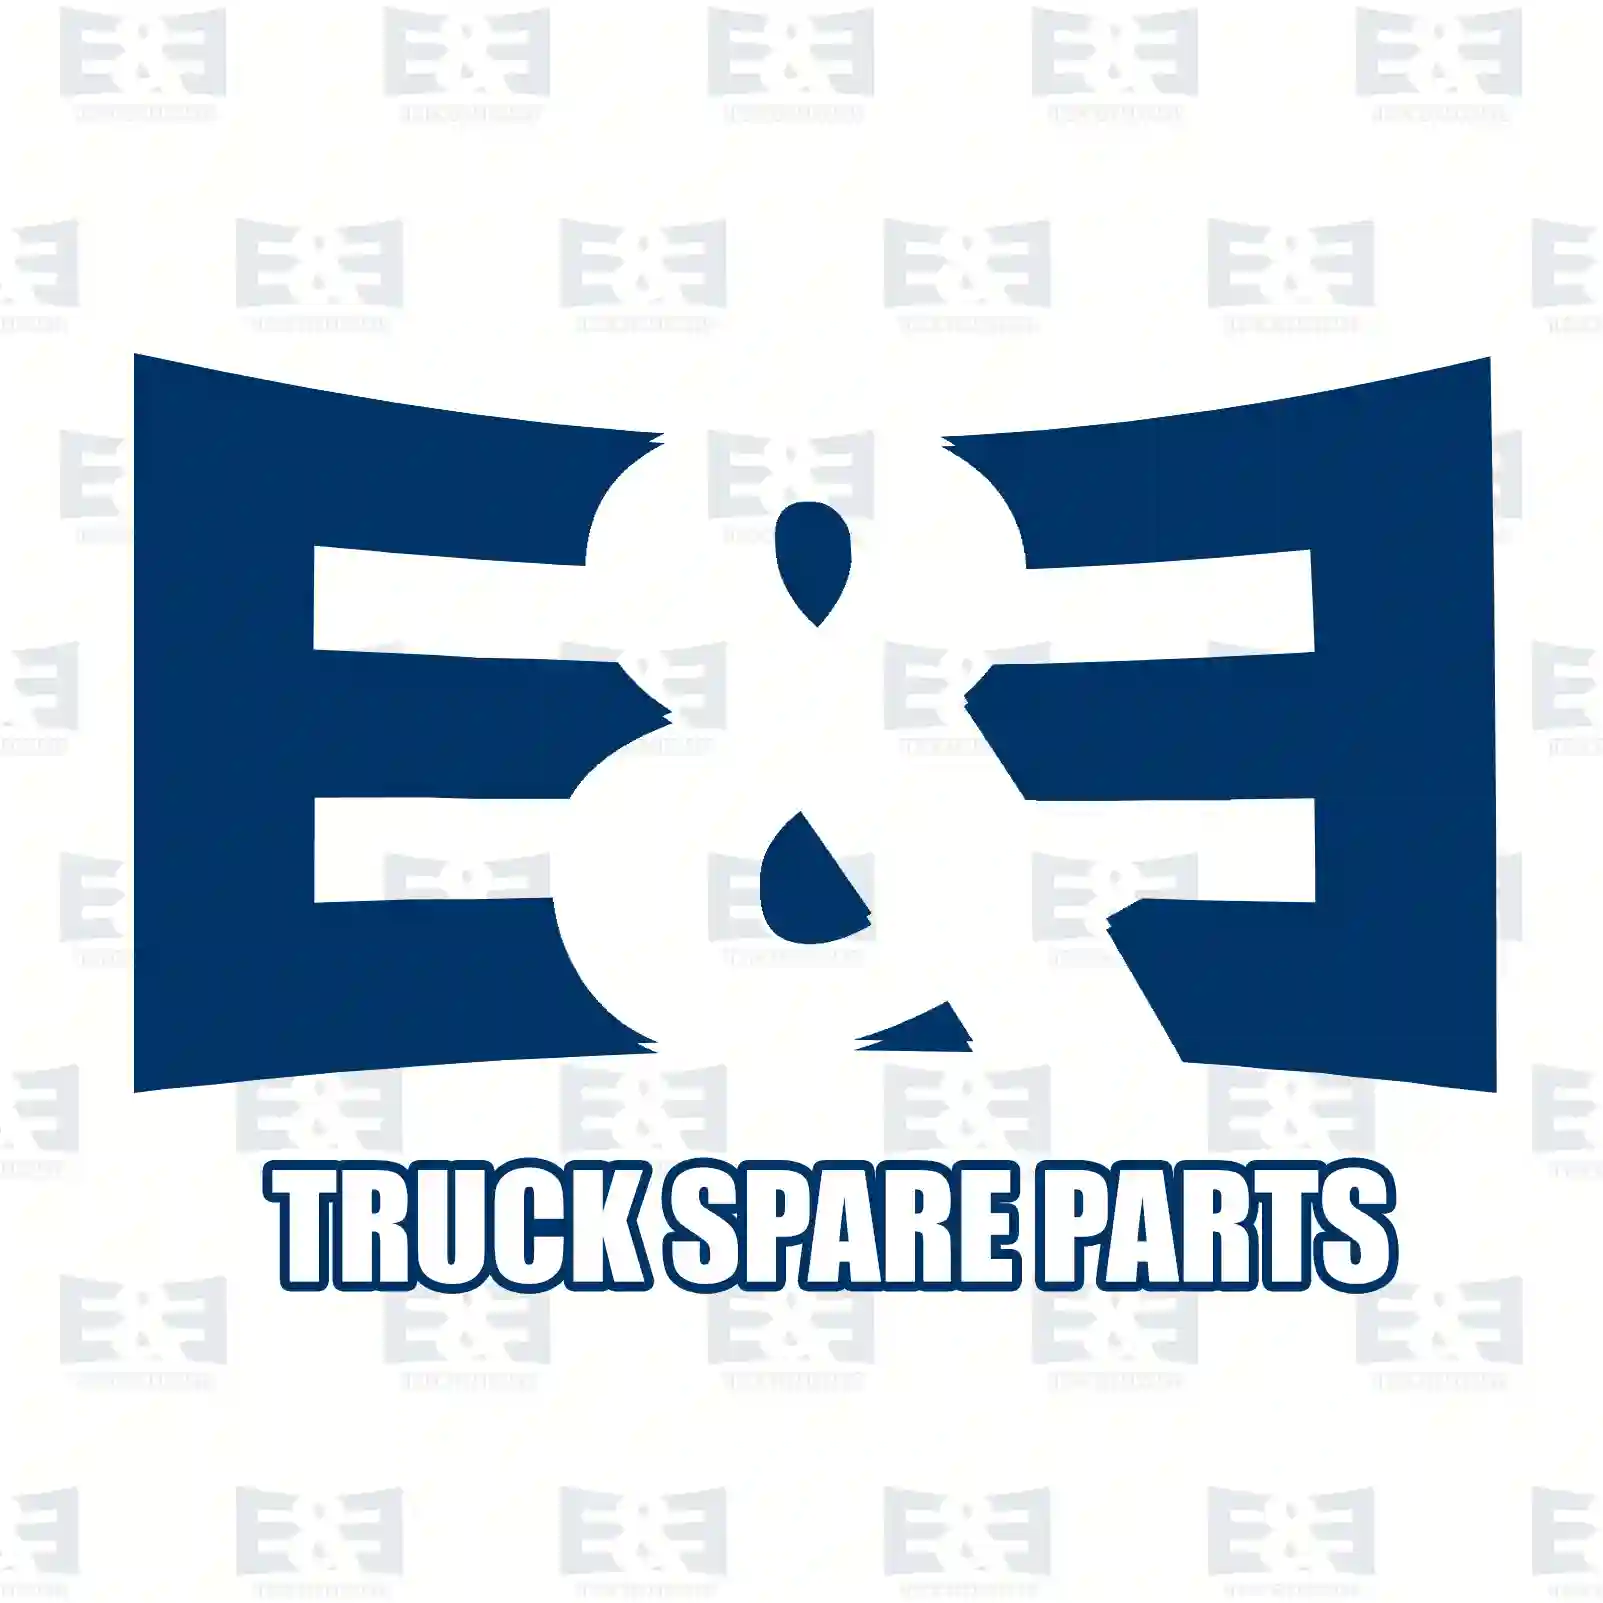 O-ring, 2E2270058, 135037, 182931, ZG02854-0008, ||  2E2270058 E&E Truck Spare Parts | Truck Spare Parts, Auotomotive Spare Parts O-ring, 2E2270058, 135037, 182931, ZG02854-0008, ||  2E2270058 E&E Truck Spare Parts | Truck Spare Parts, Auotomotive Spare Parts